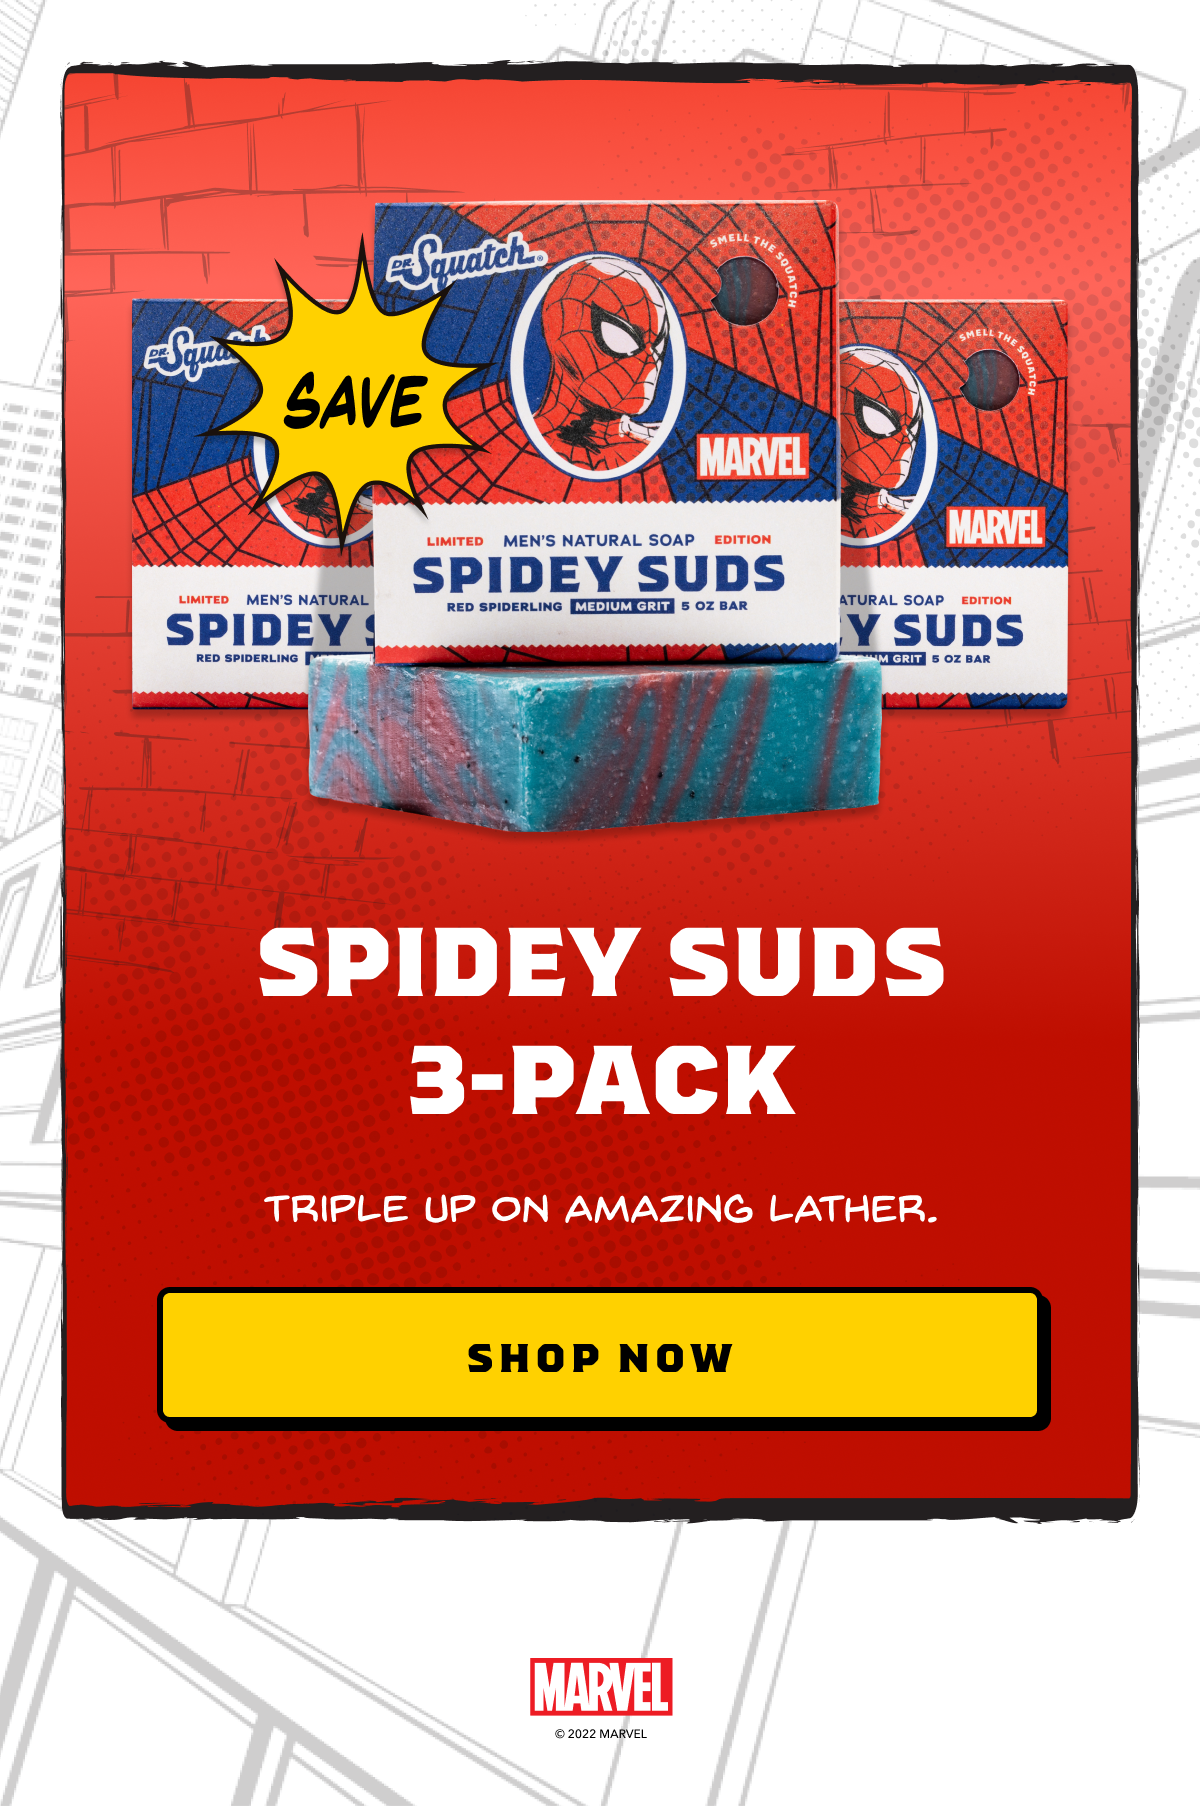 Spidey Suds 3-Pack